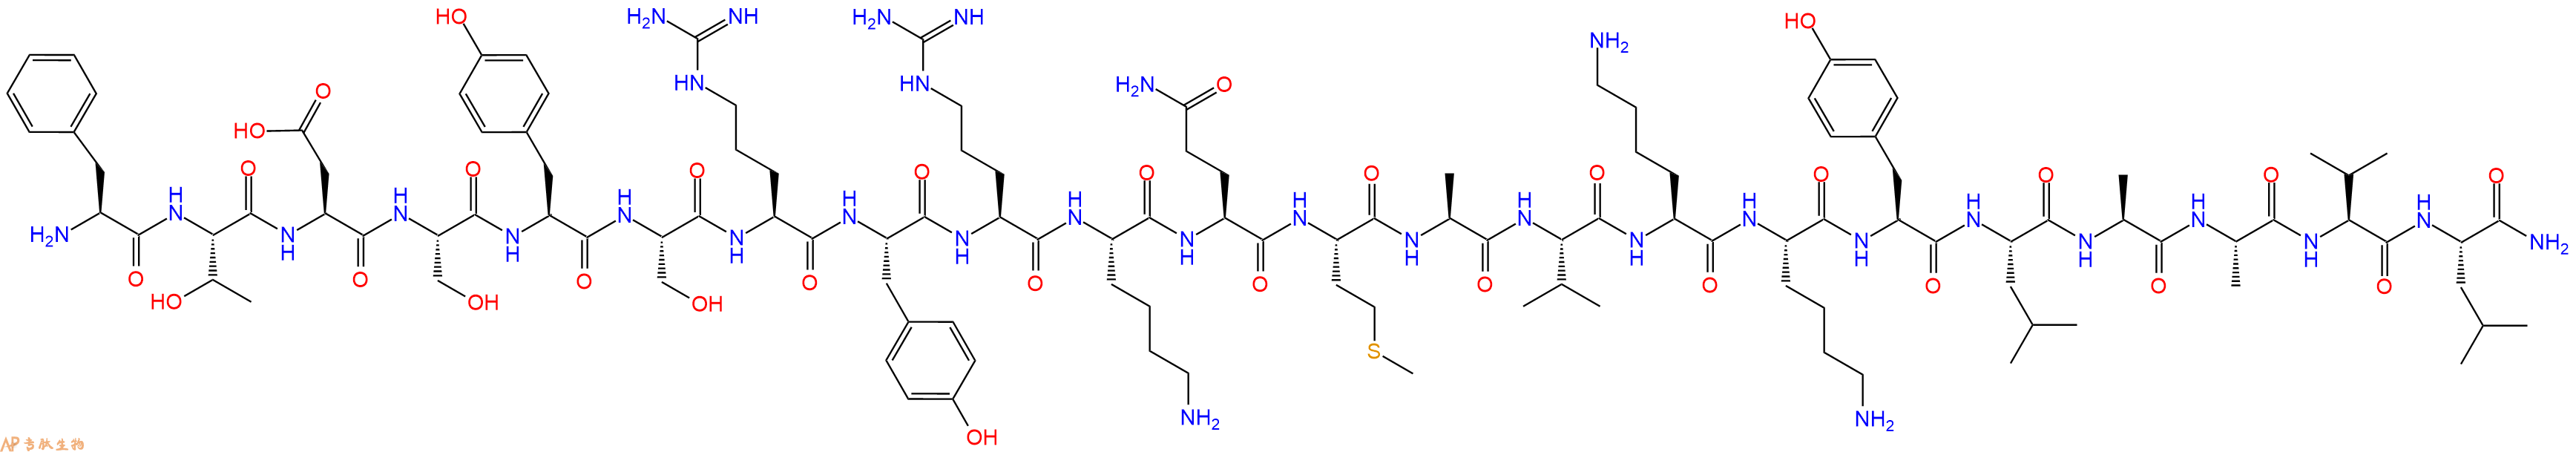 专肽生物产品PACAP(6-27), human, ovine, rat136134-68-4